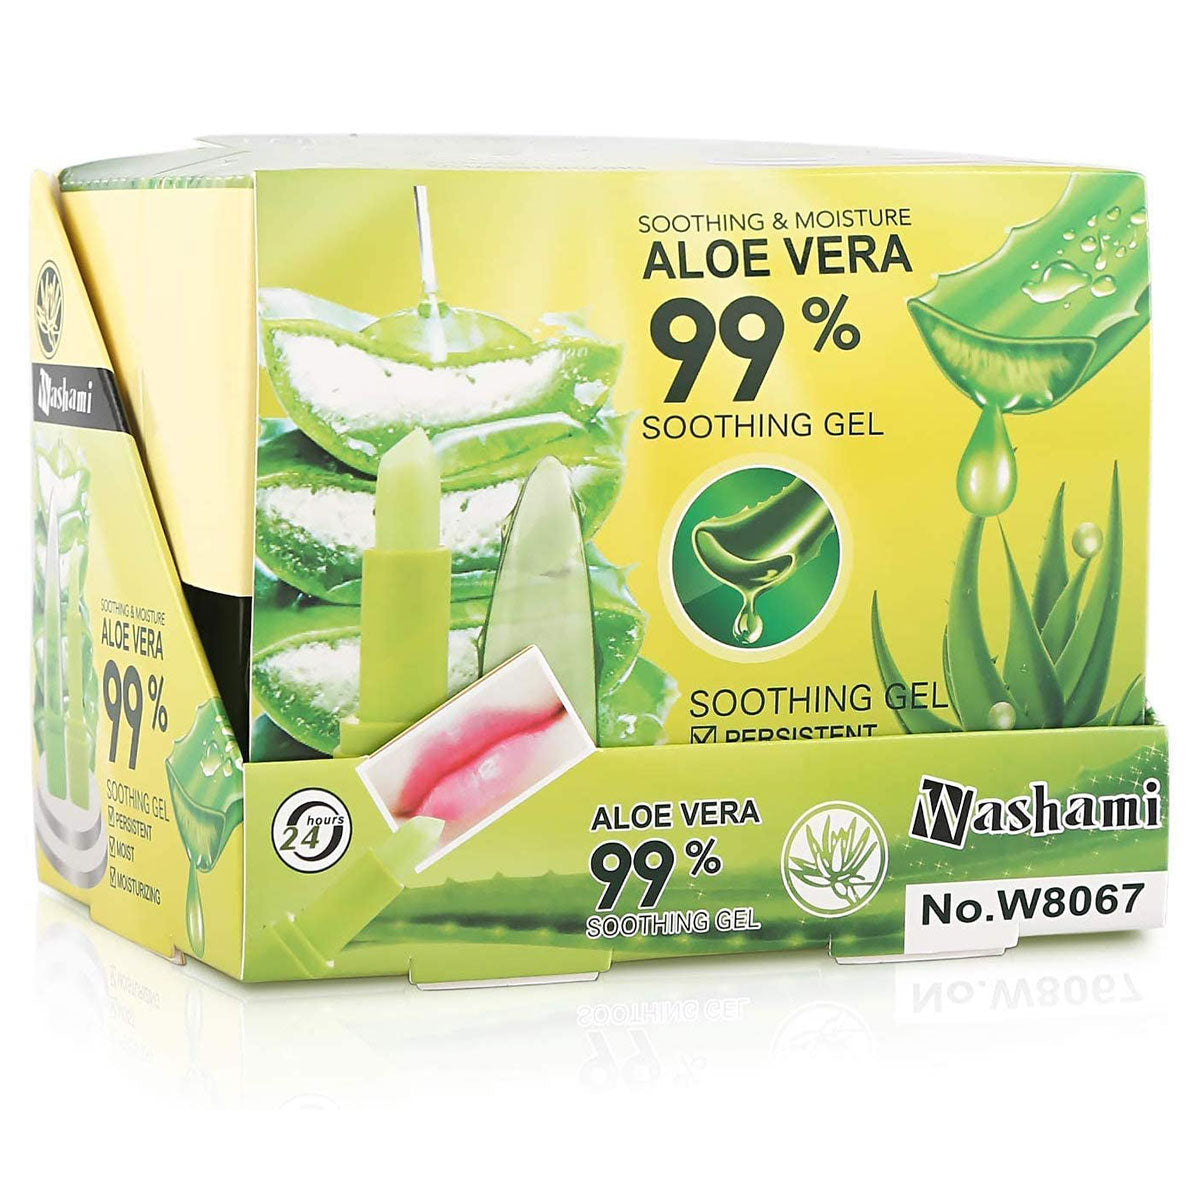 Washami Aloe Vera 99 Color Lipstick Value Pack of 3 